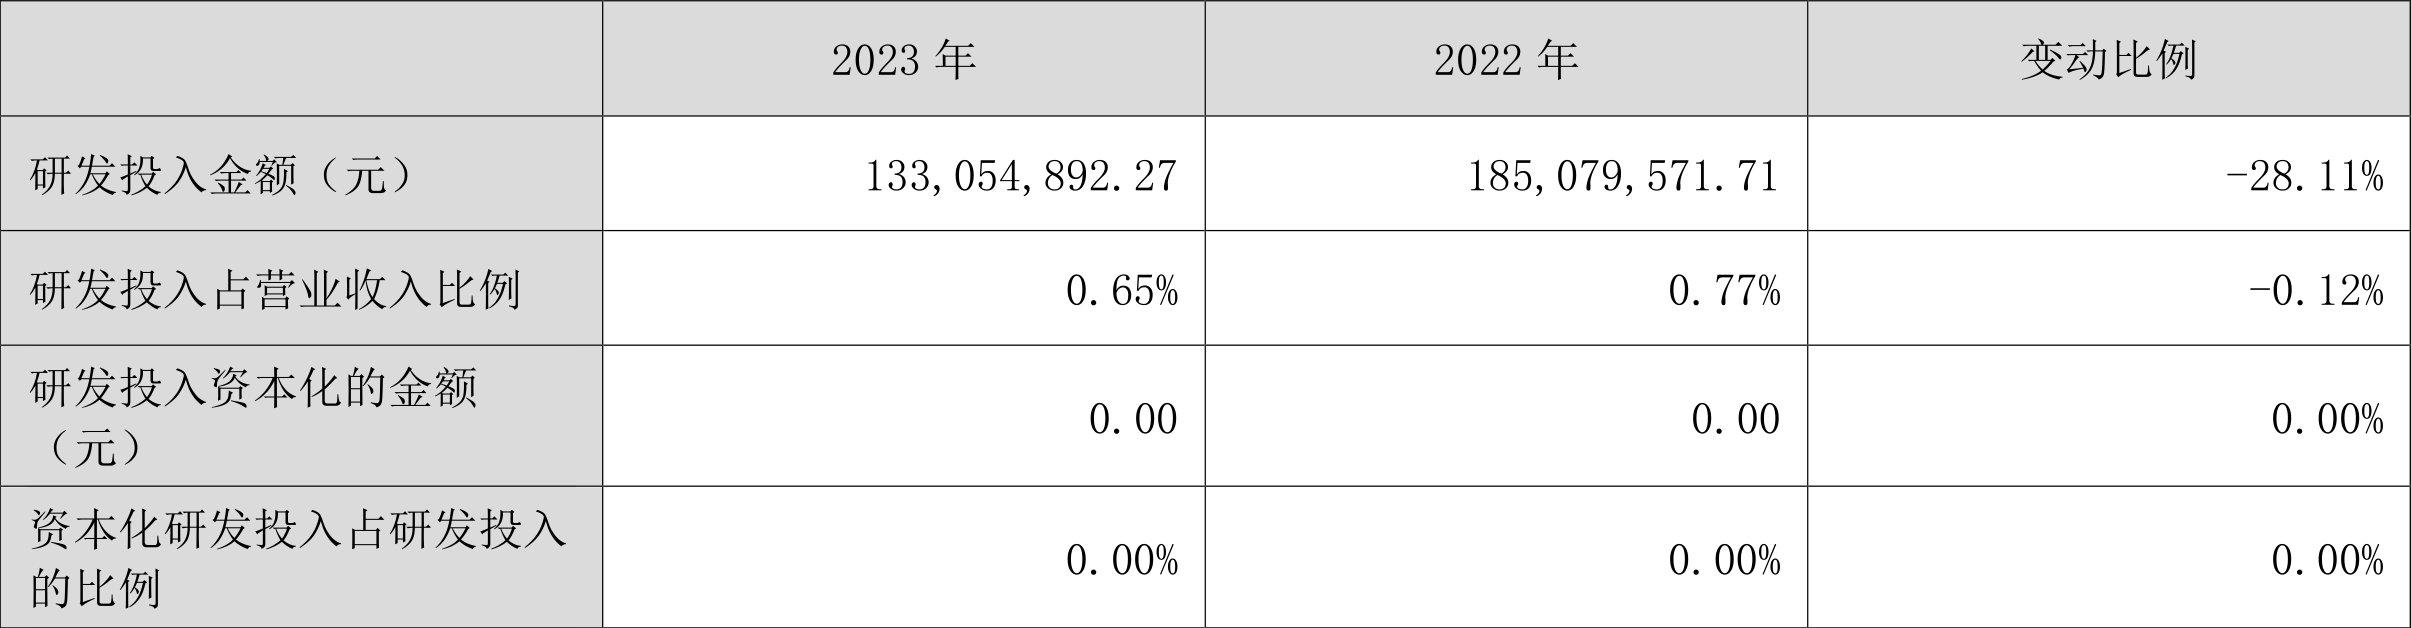 深圳华强：2023 年净利润同比下降 50.93% 拟 10 派 2 元 - 第 22 张图片 - 小城生活